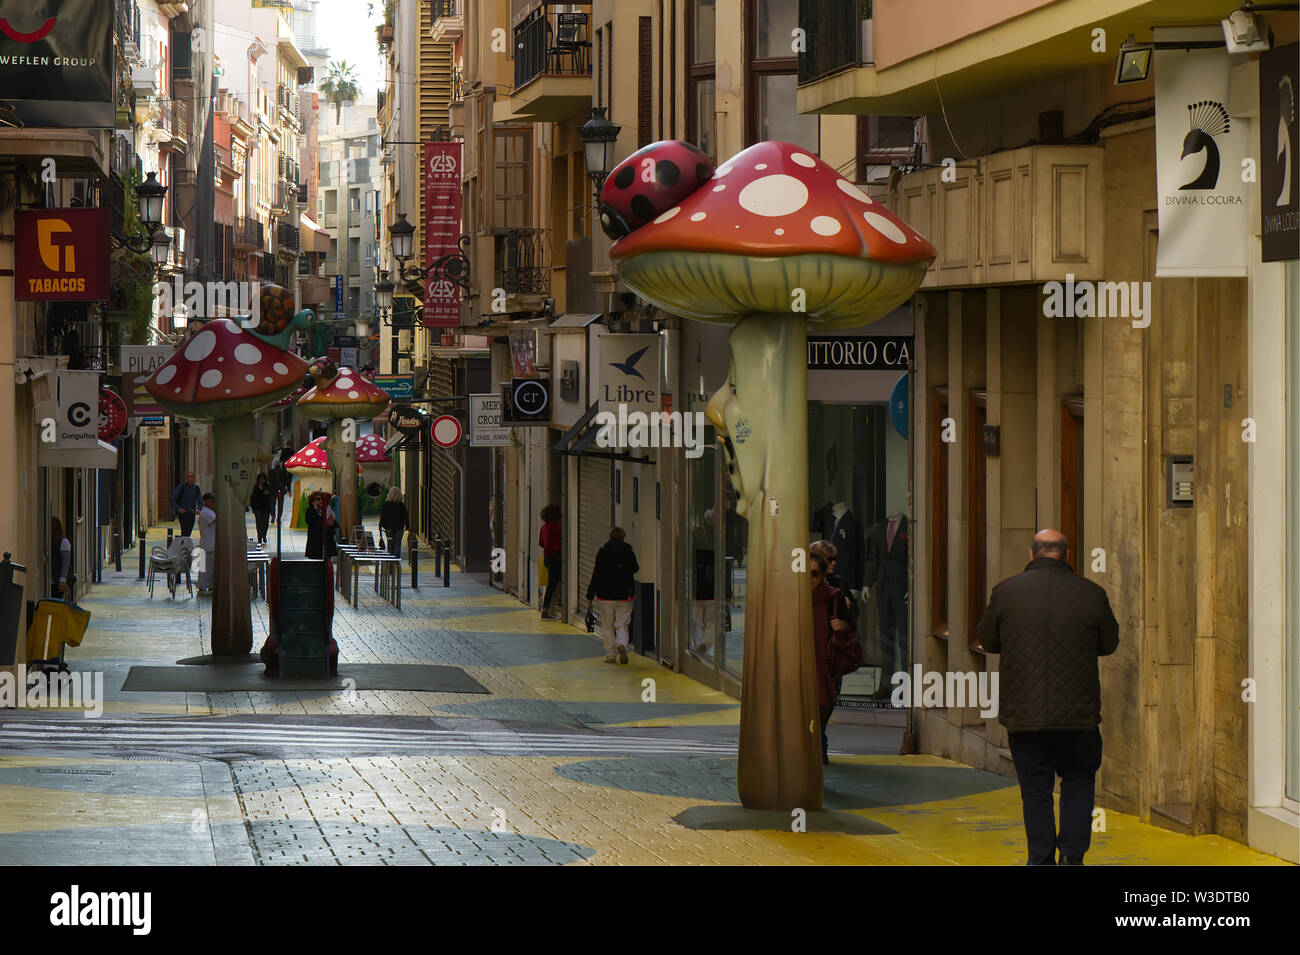 Carrer de Sant Francesc à Alicante, Espagne. Rue de la ville avec des sculptures insolites de champignons Les champignons et d'insectes. Banque D'Images